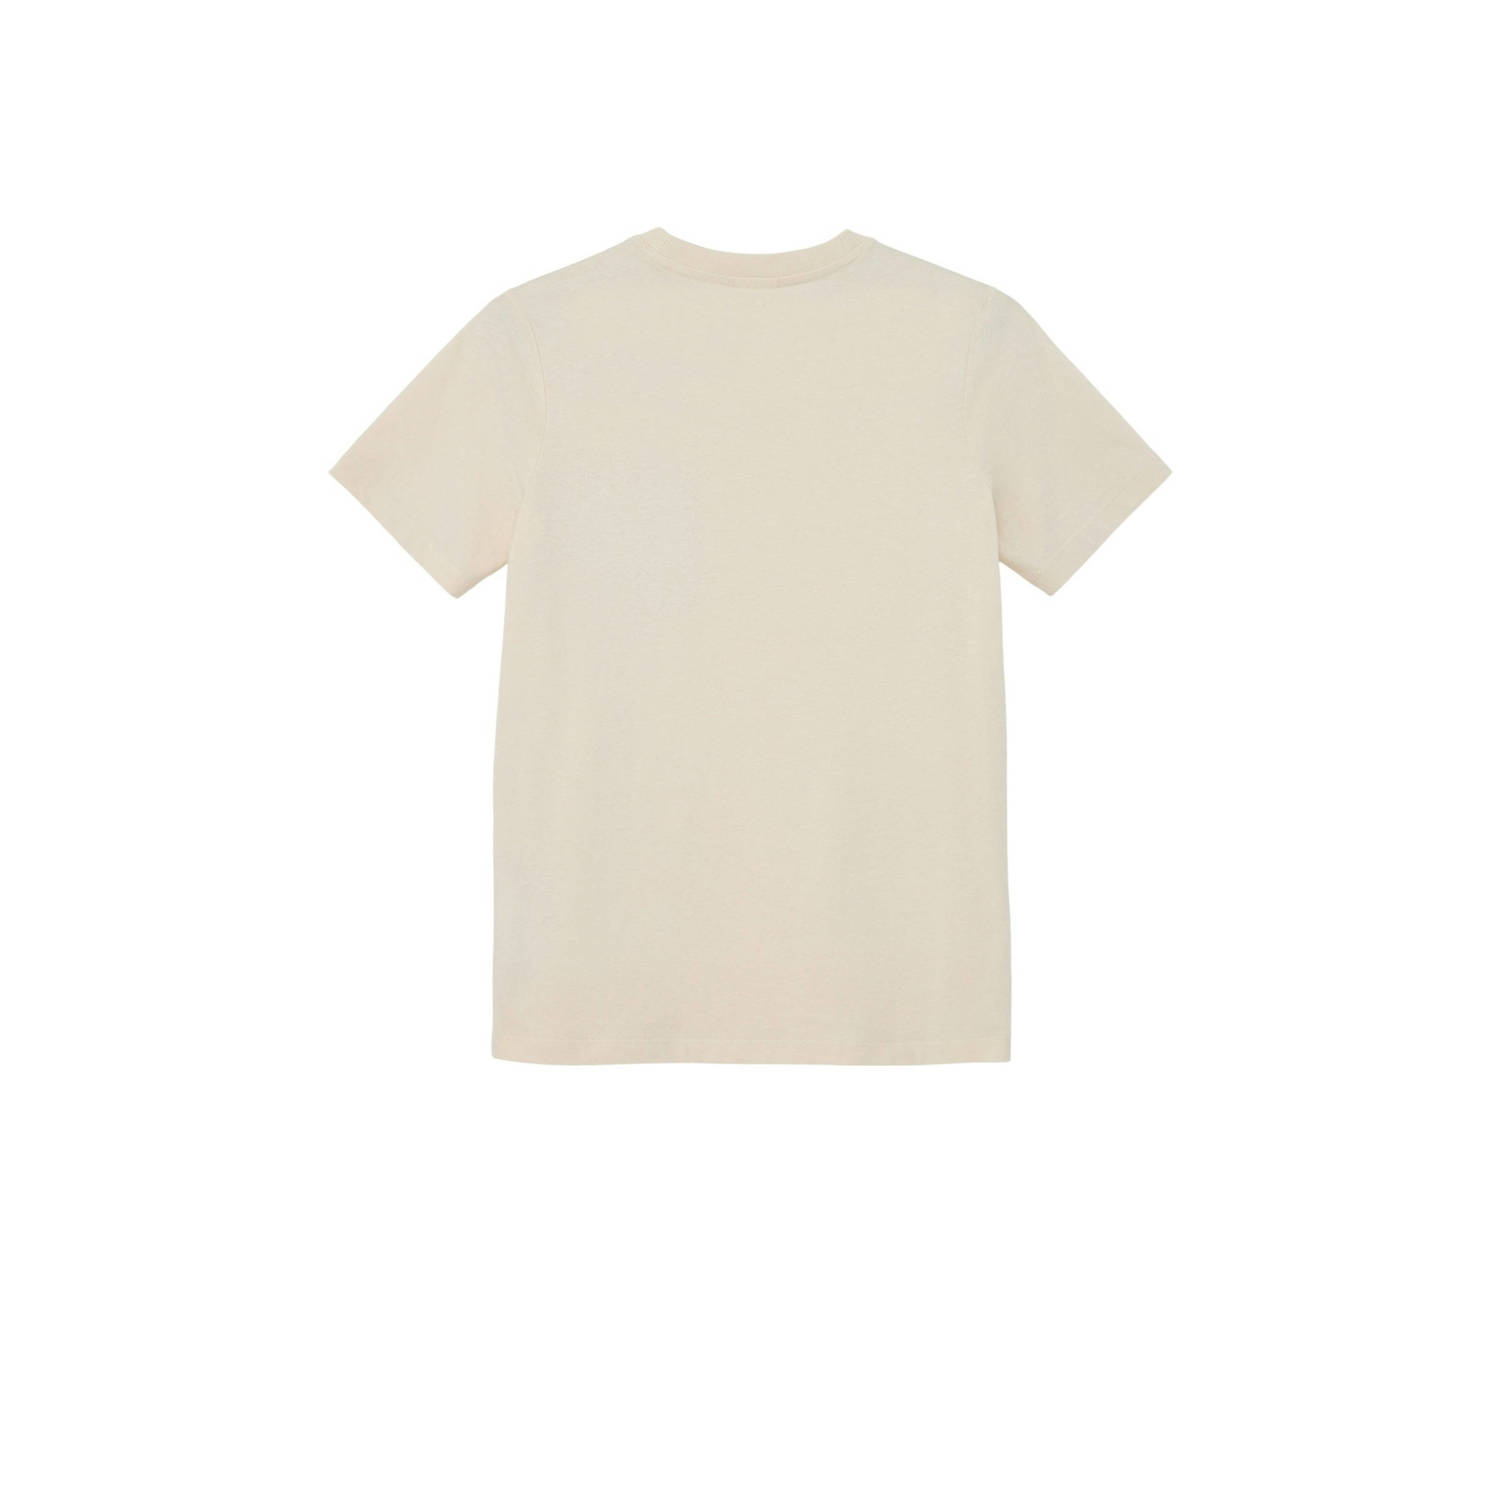 s.Oliver T-shirt beige